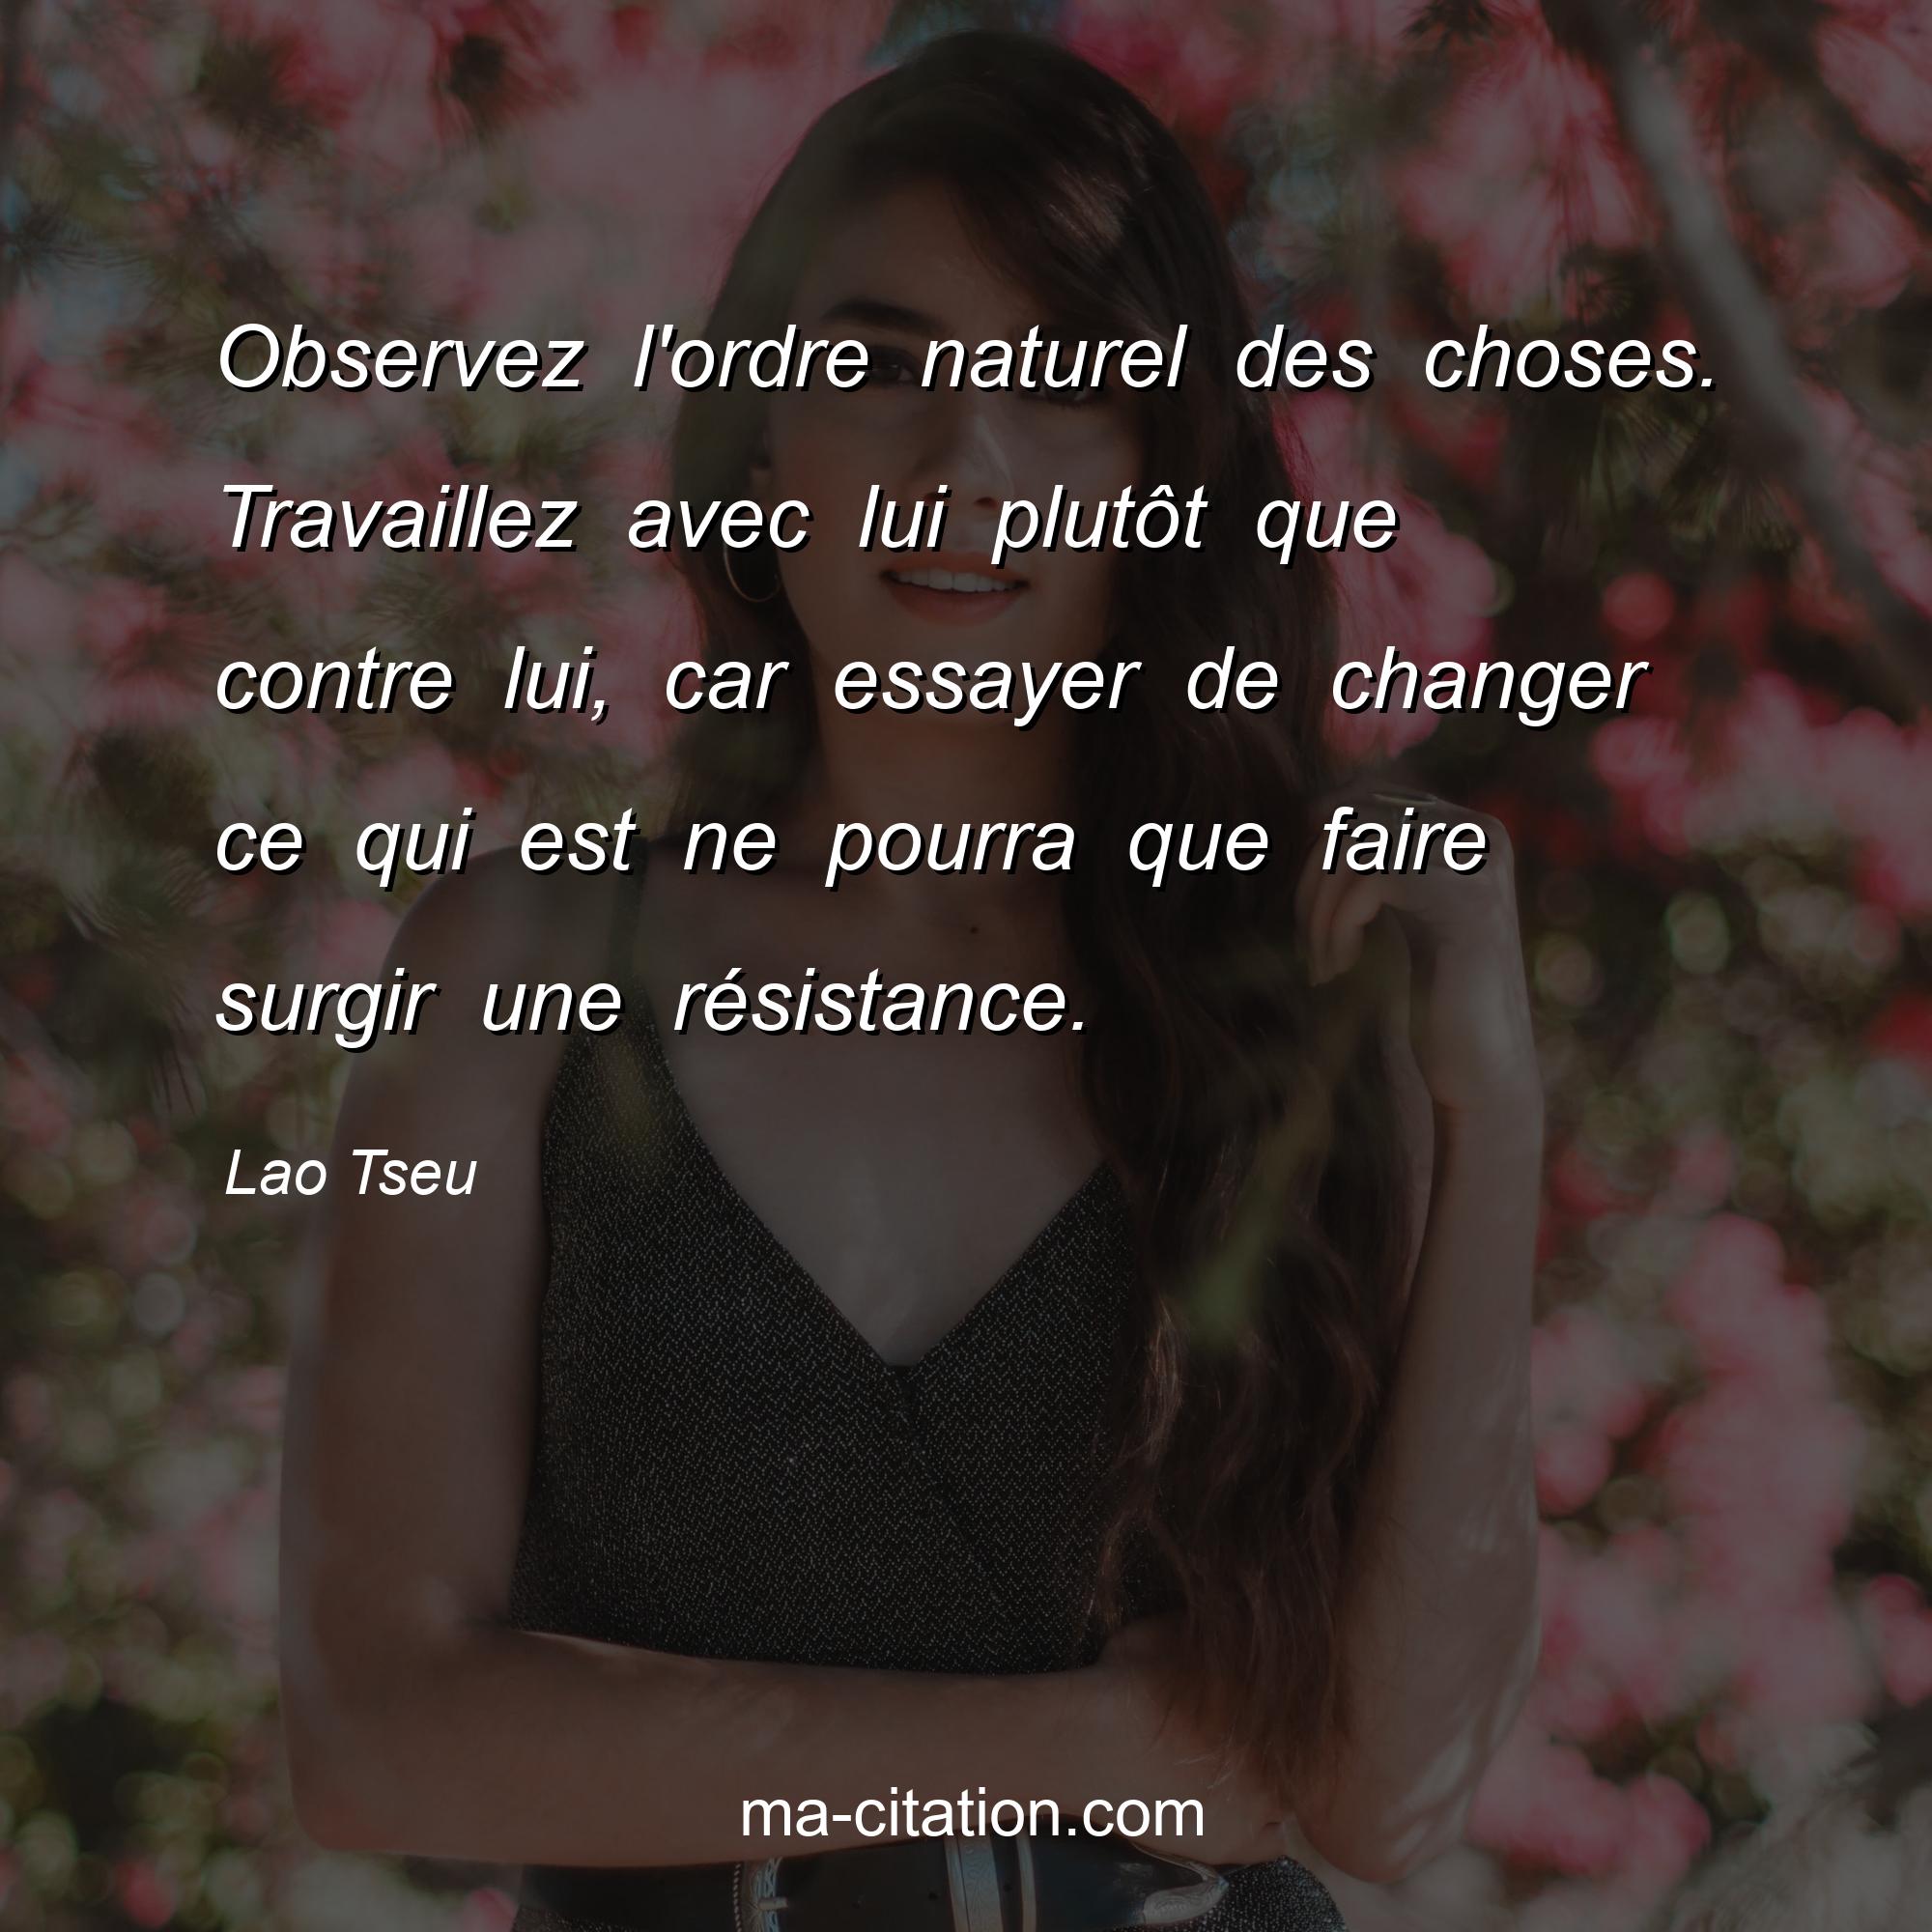 Lao Tseu : Observez l'ordre naturel des choses. Travaillez avec lui plutôt que contre lui, car essayer de changer ce qui est ne pourra que faire surgir une résistance. 